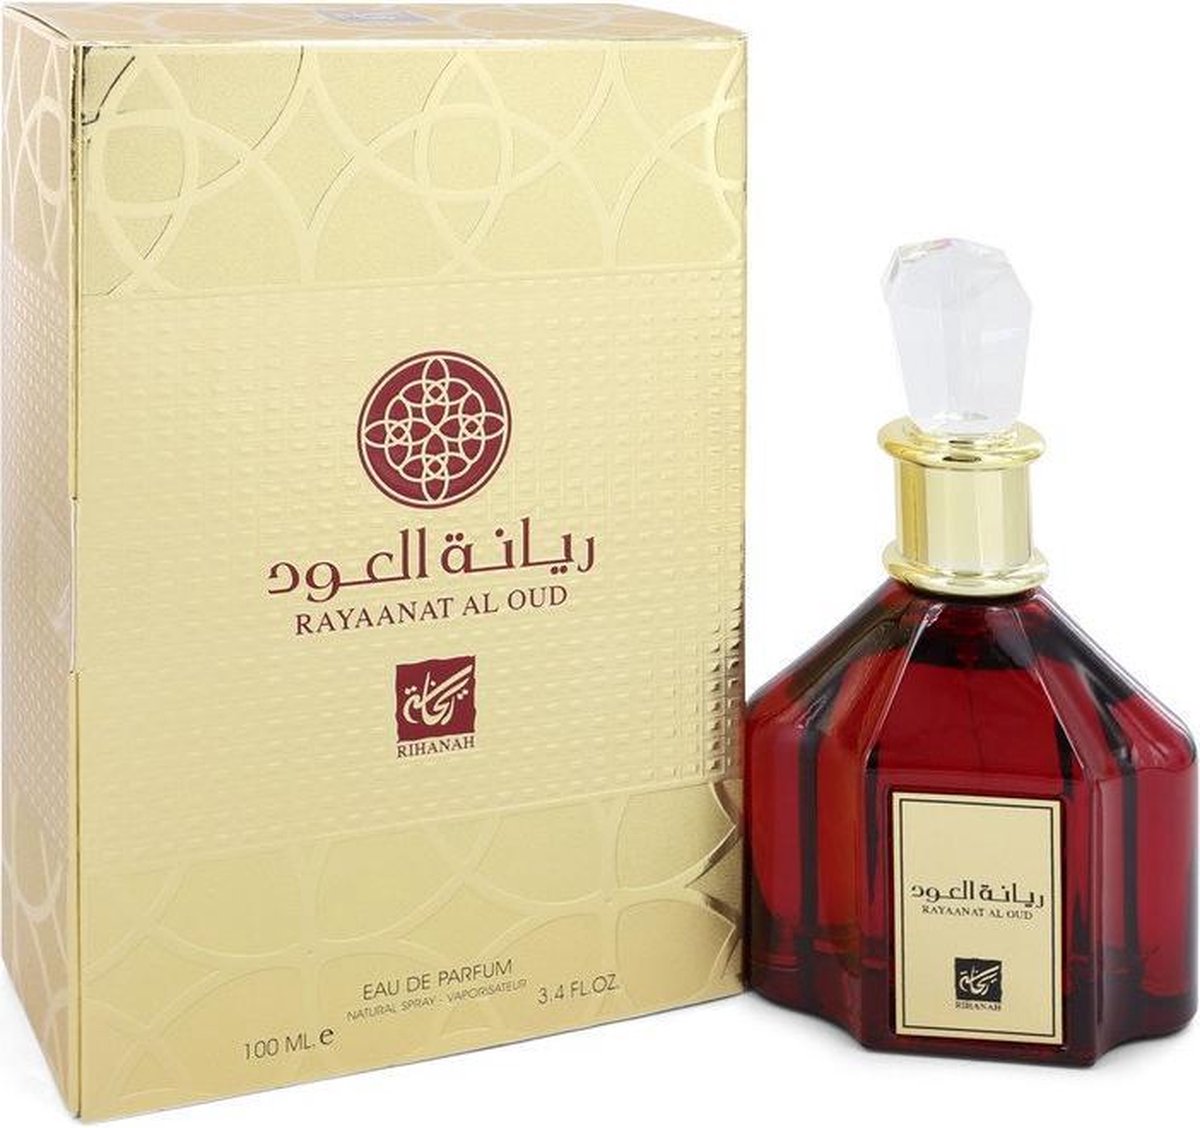 Rihanah Rayaanat Al Oud - Eau de parfum spray - 100 ml